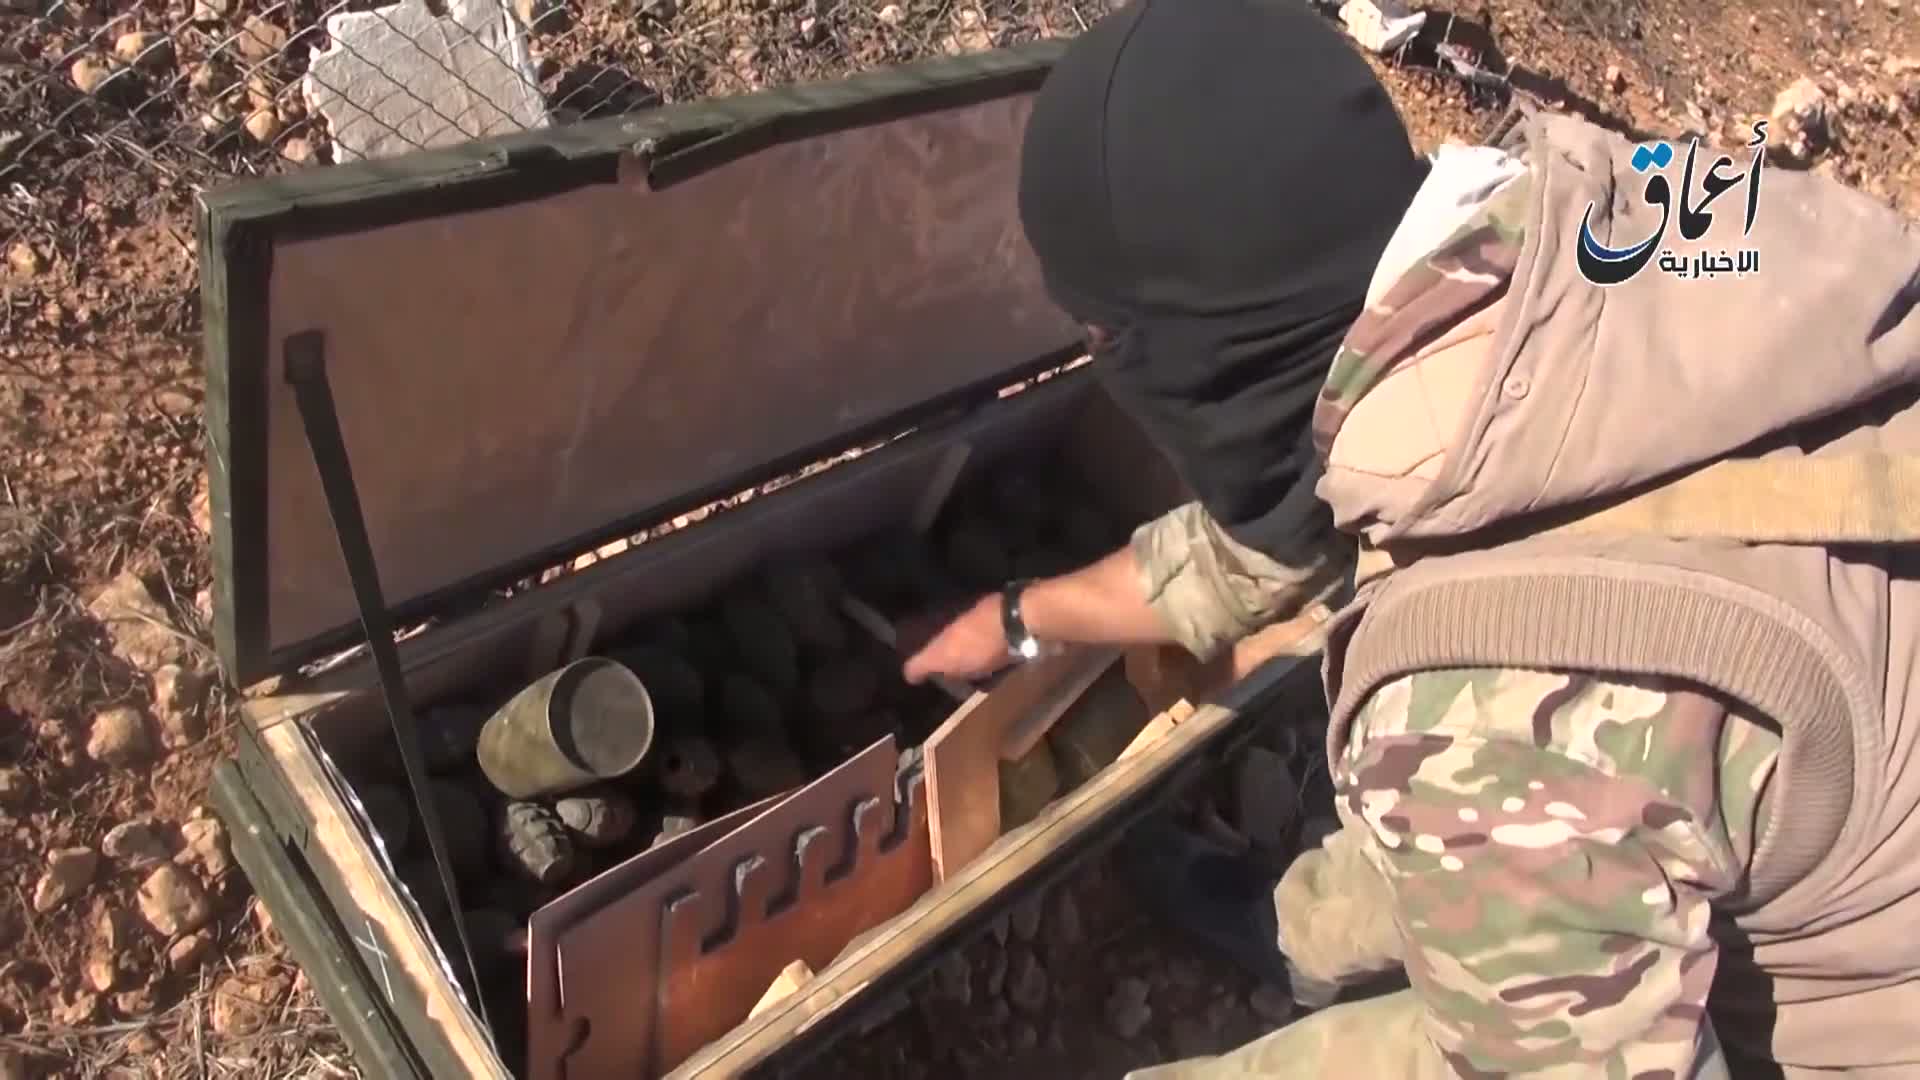 Díky za munici, vzkazují Američanům ozbrojenci z IS